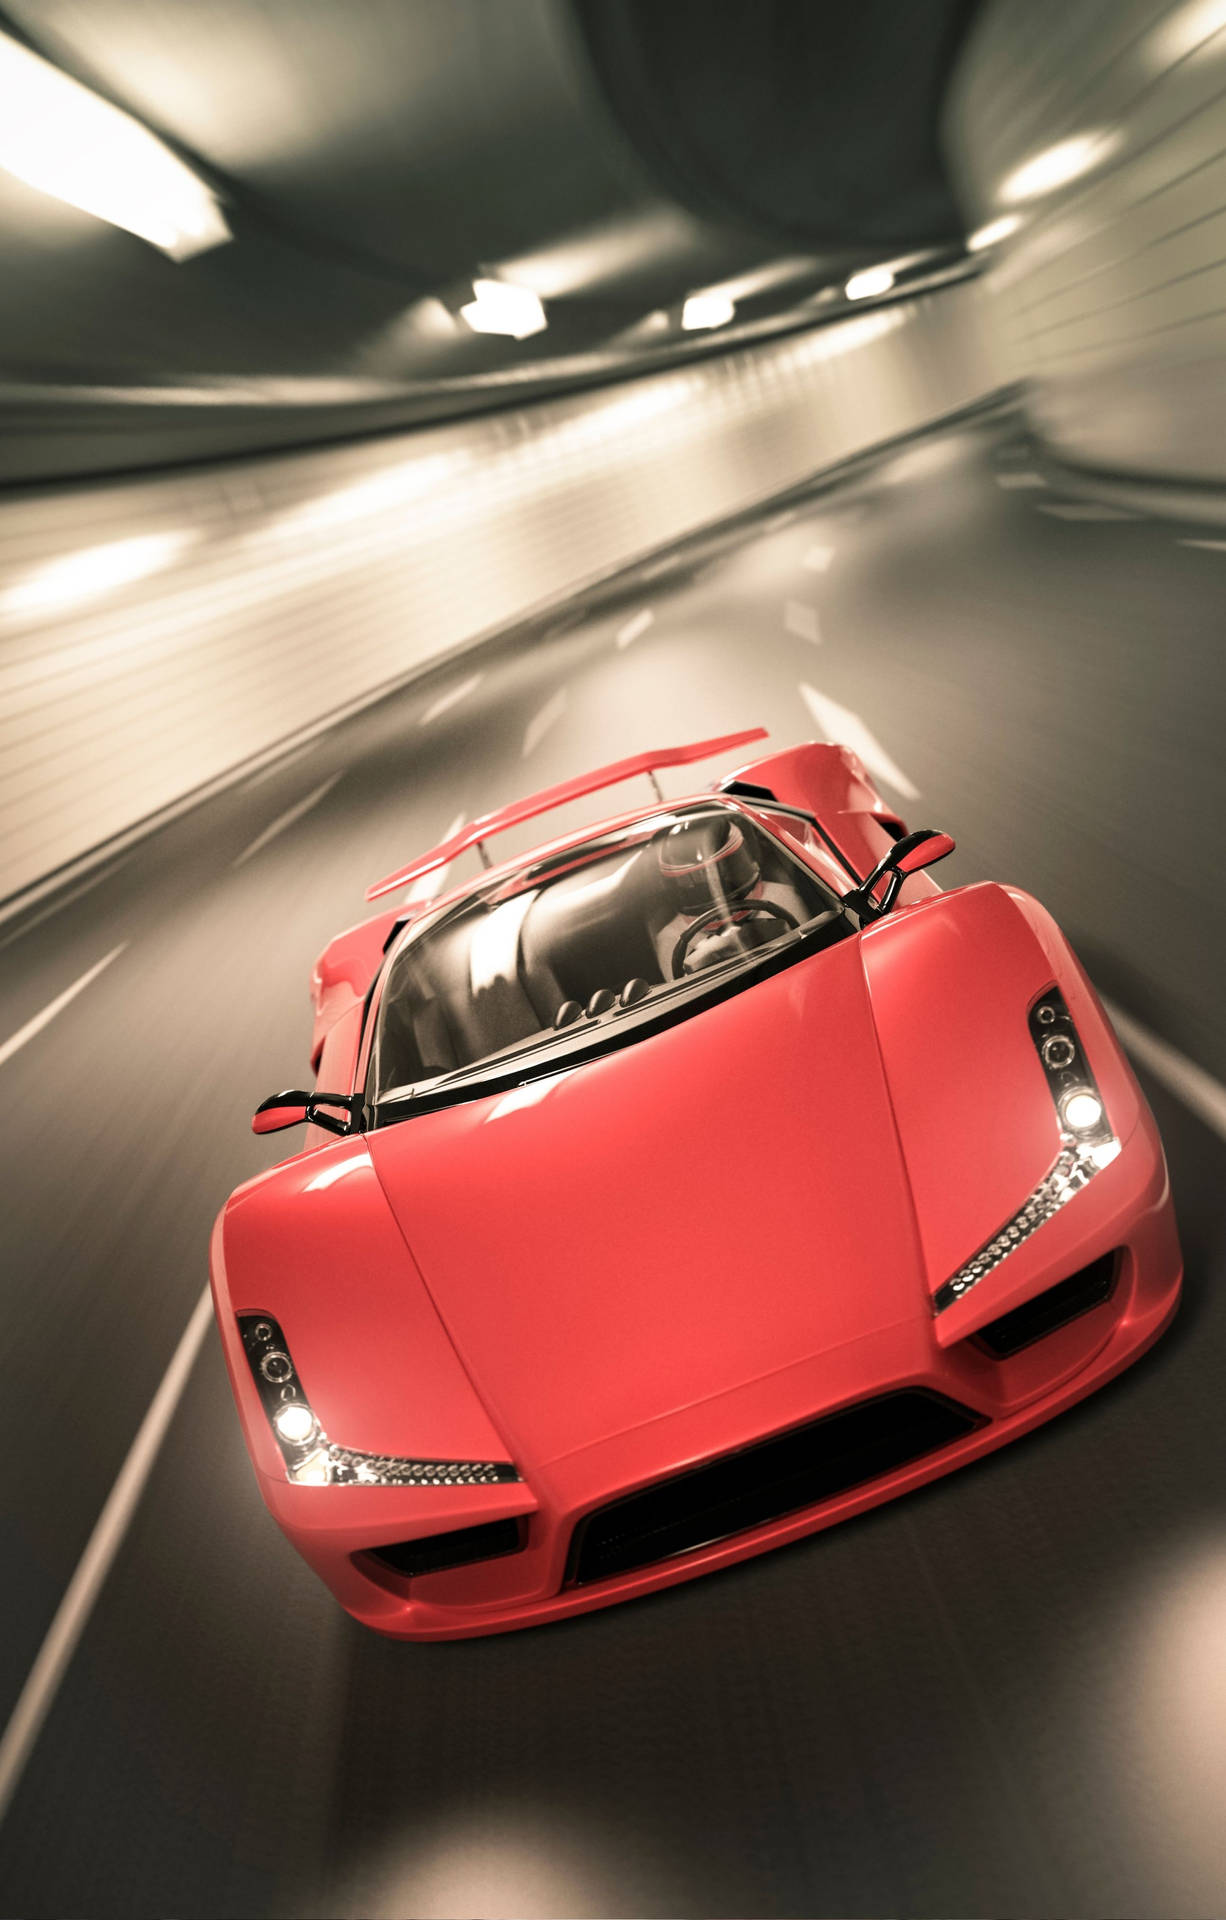 Fondode Pantalla Lamborghini 4k Para Iphone, En Rojo Y Difuminado. Fondo de pantalla